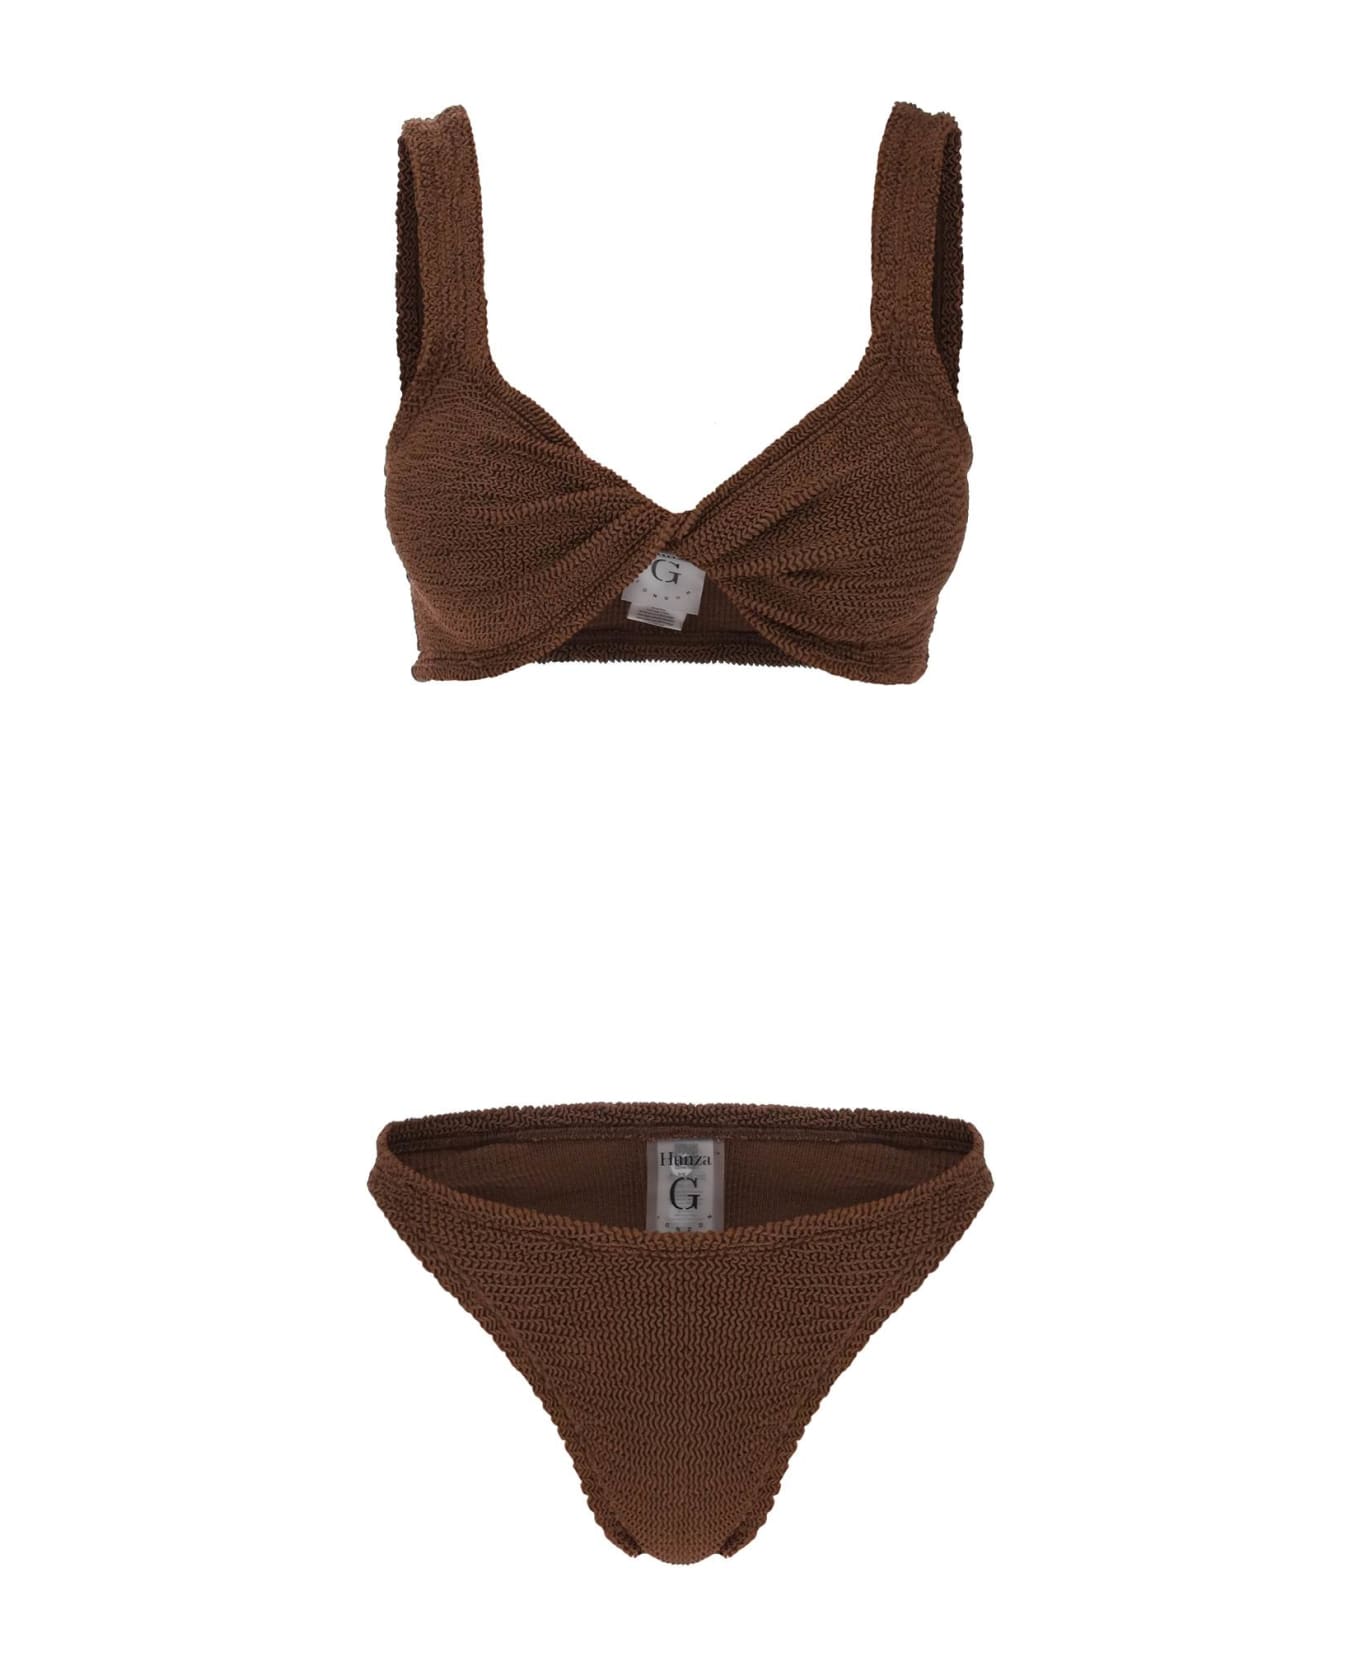 Hunza G Juno Metallic-effect Bikini Set - METALLIC CHOCOLATE (Brown)